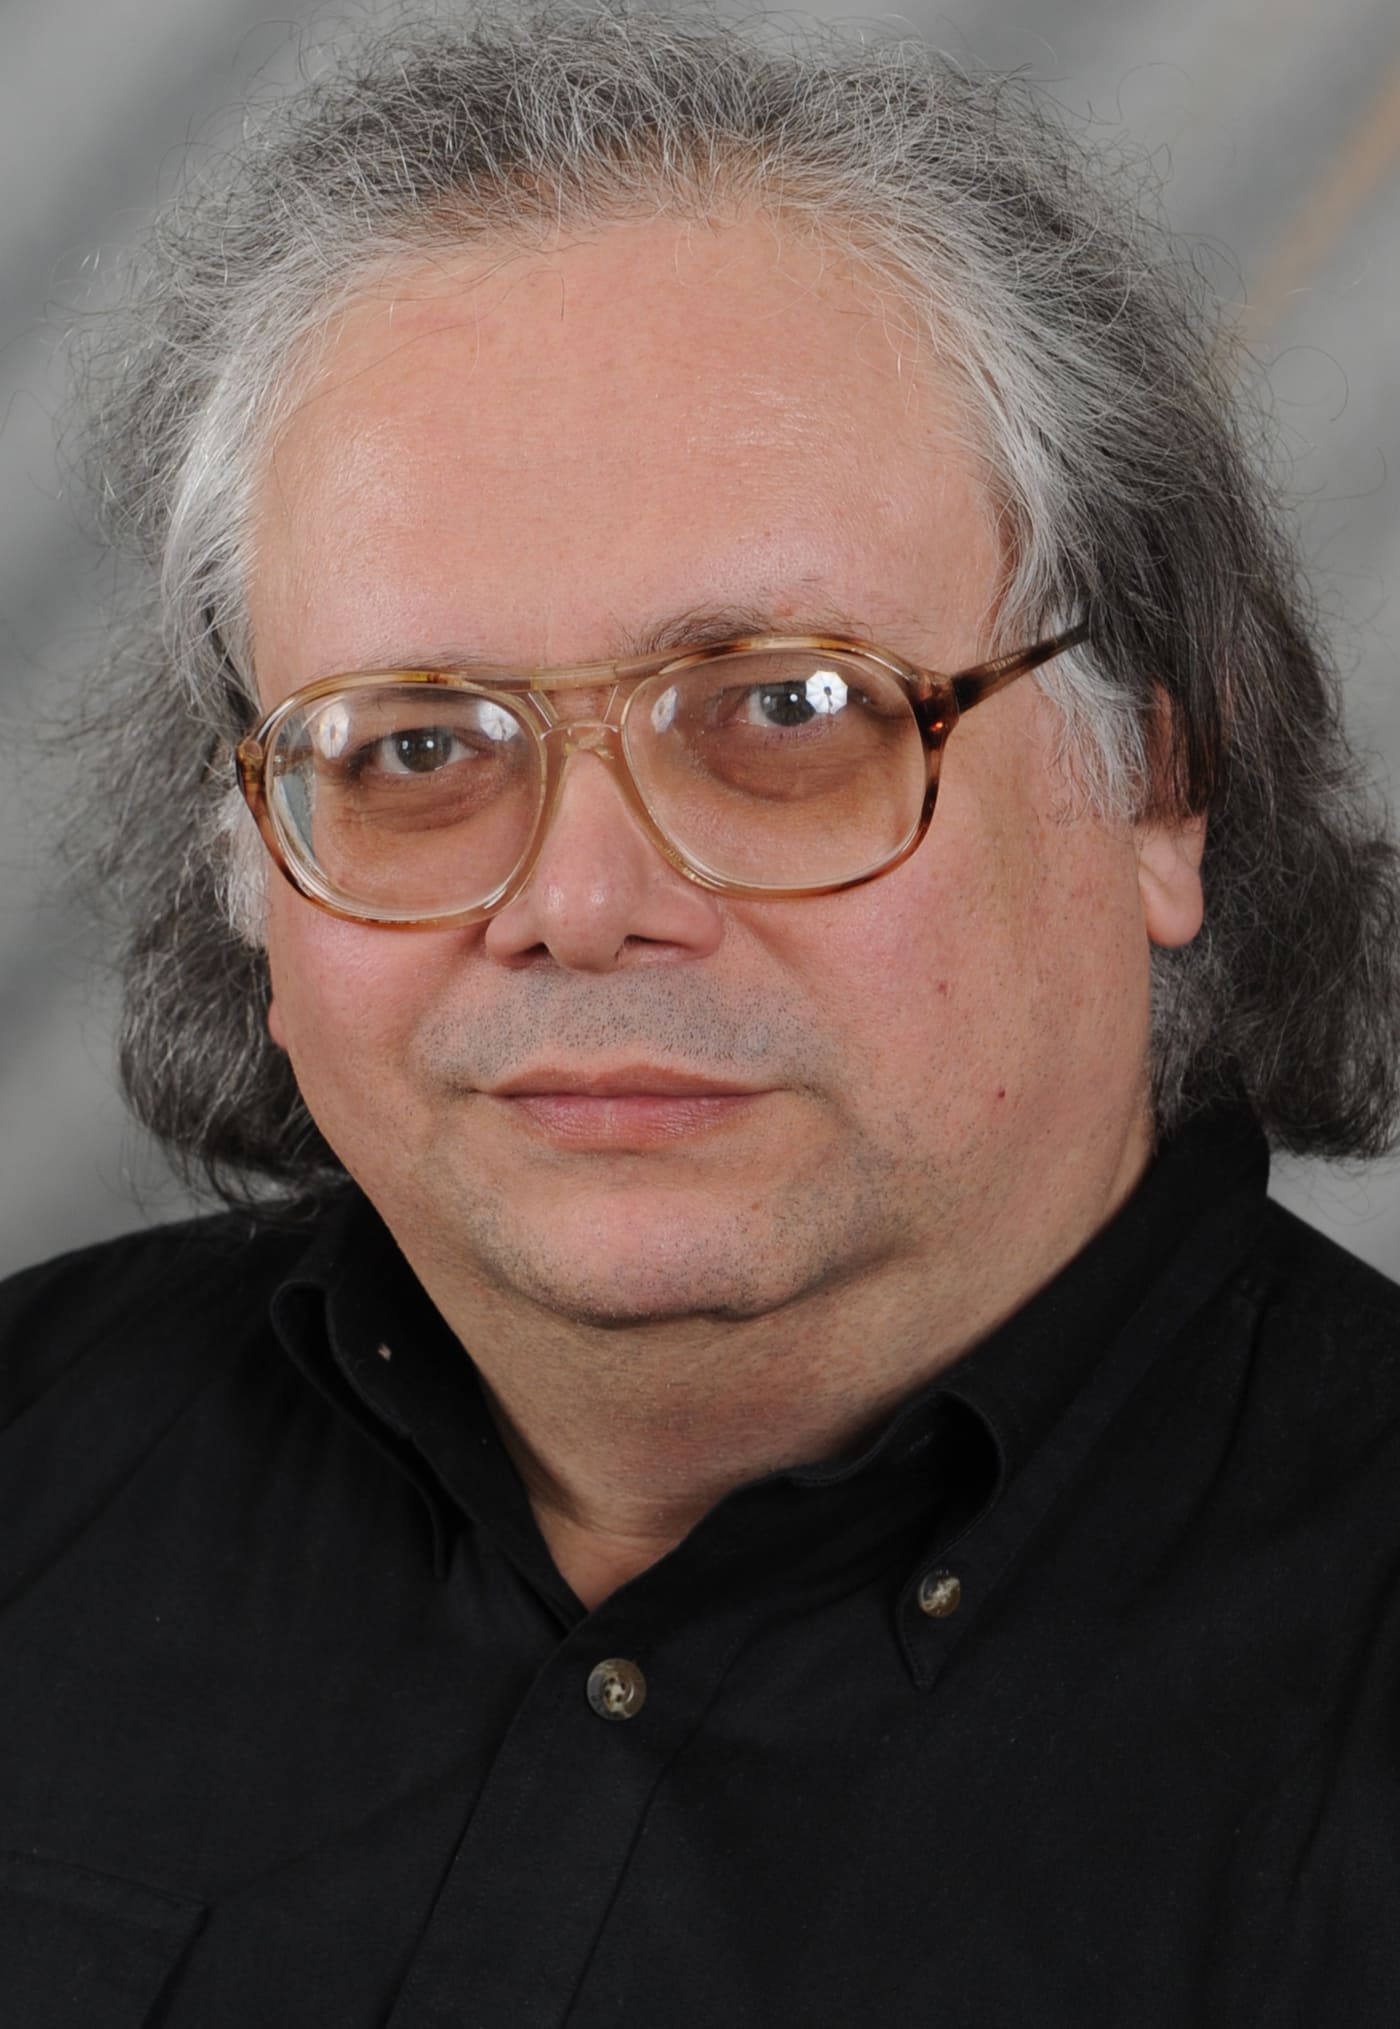 Иванищук Александр Владимирович- лектор, учитель математики